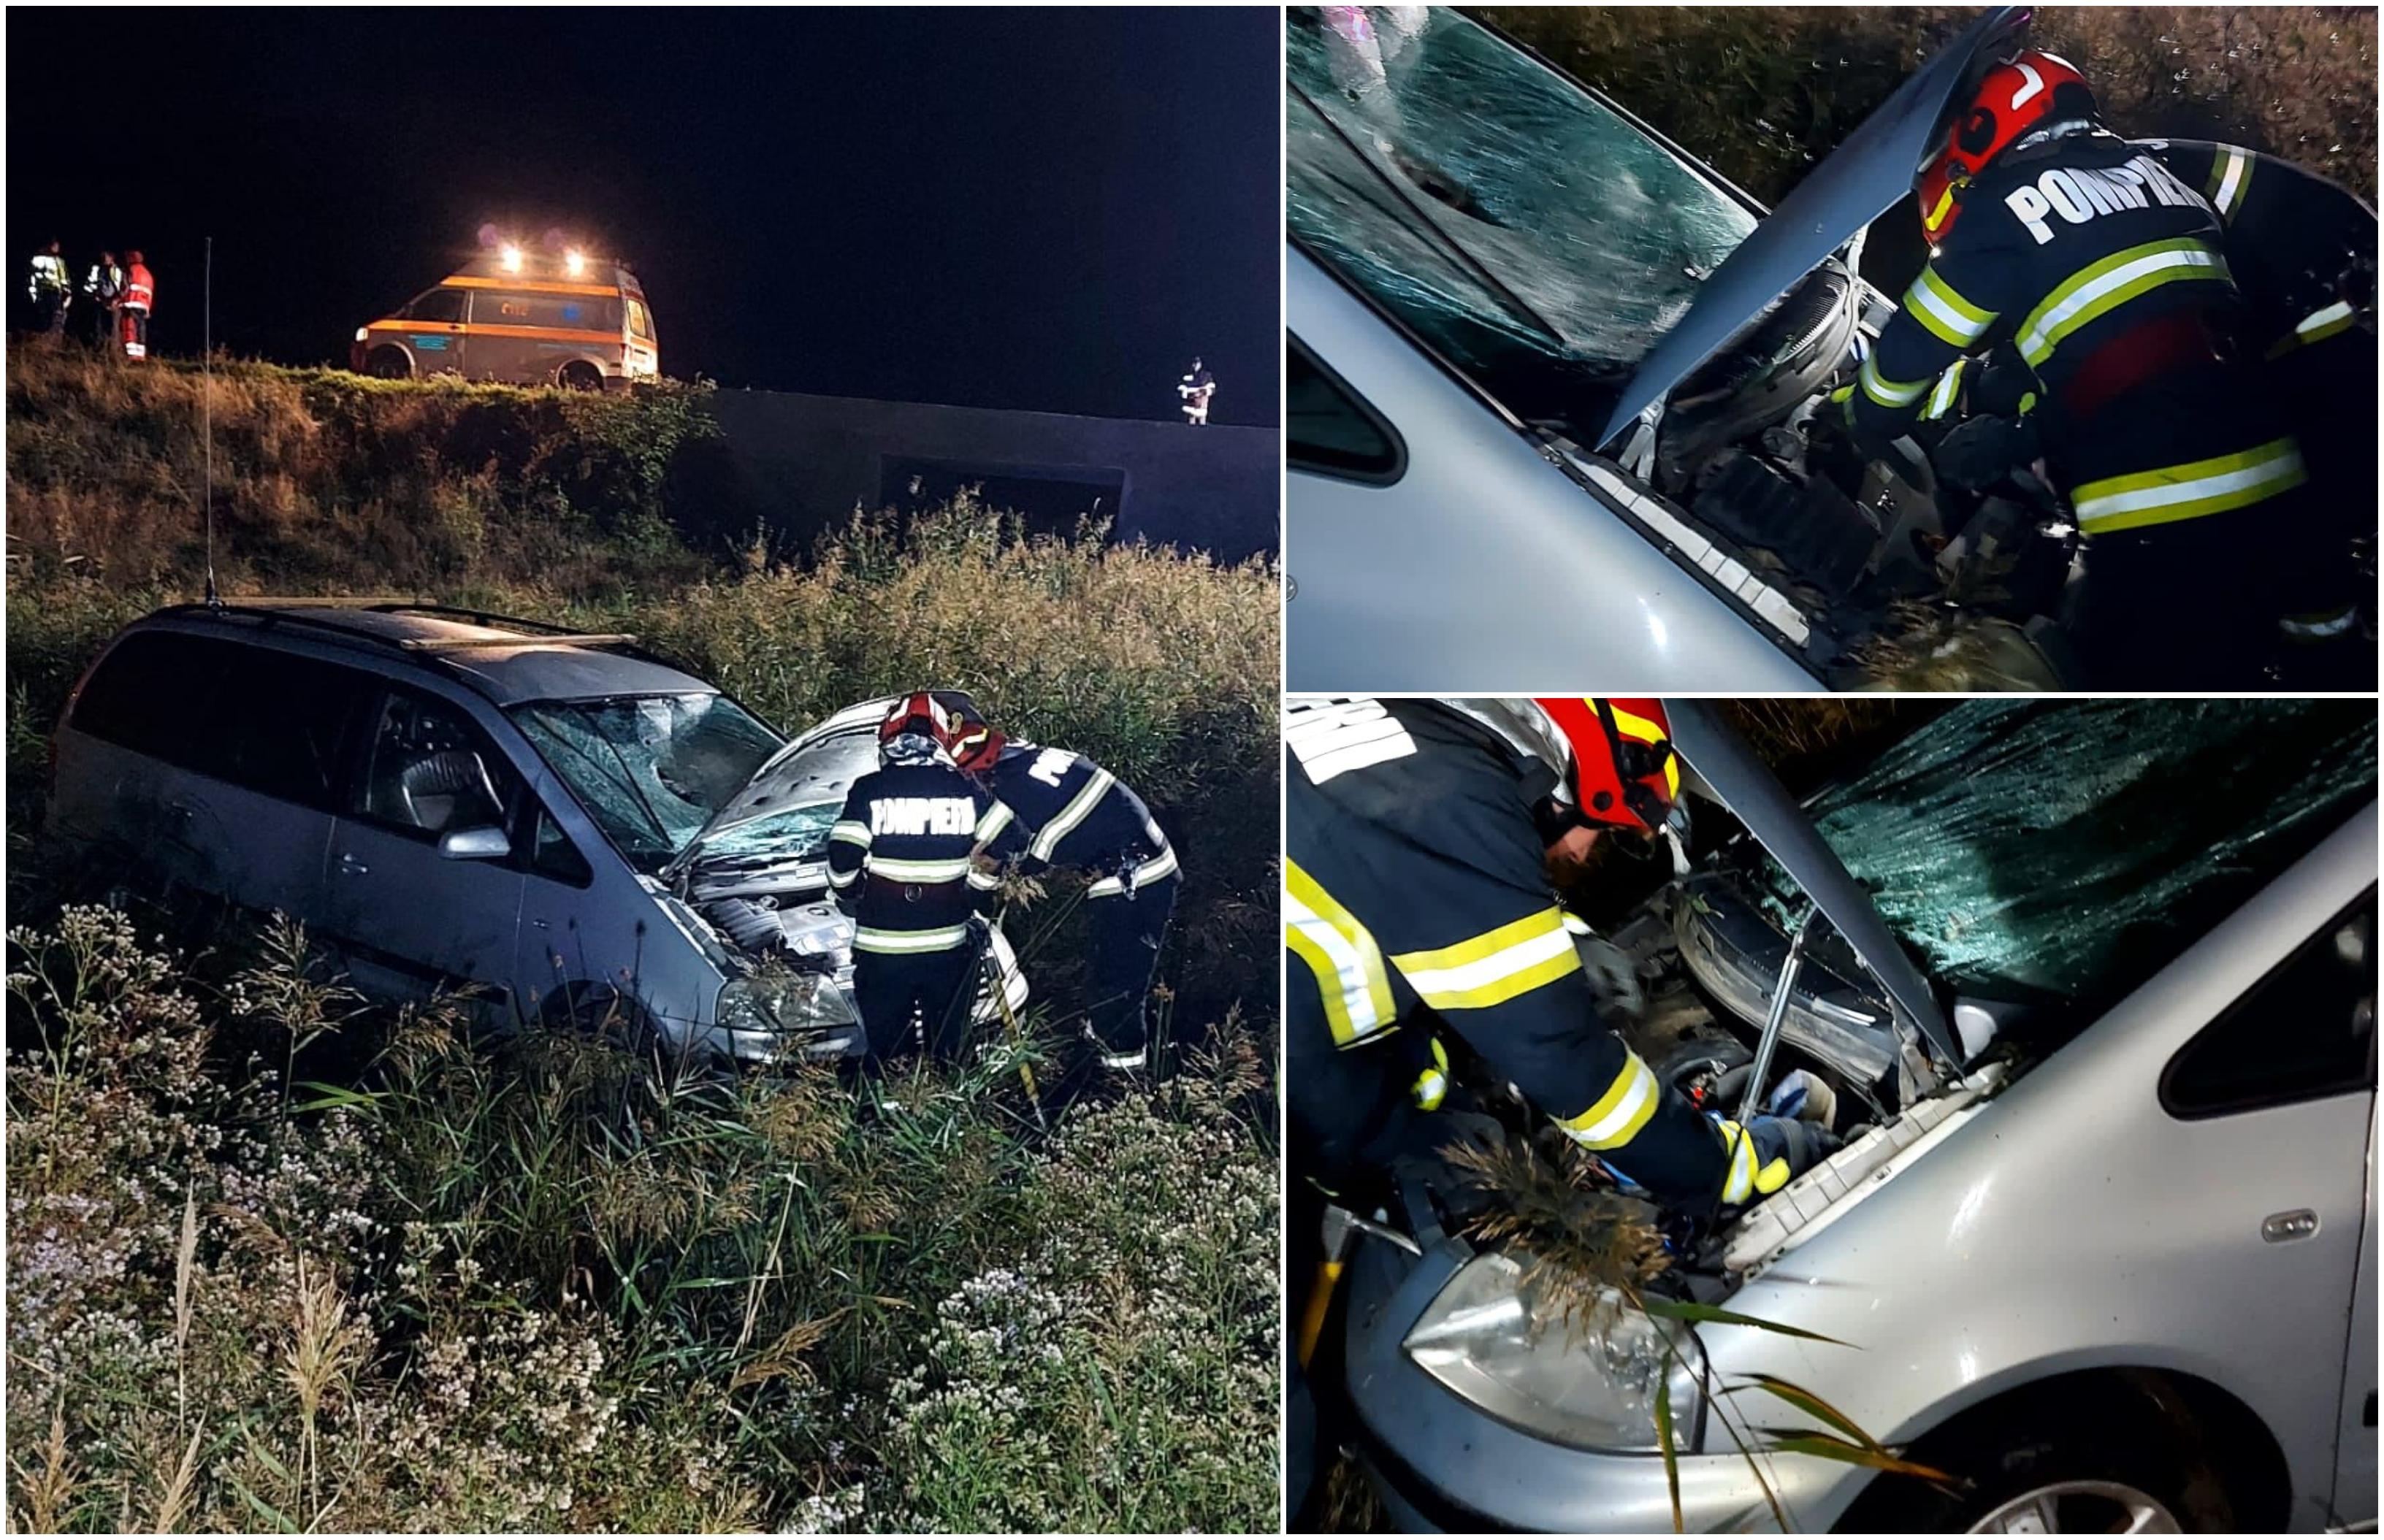 Bărbat mort pe loc, după ce şoferul unui Opel l-a acroşat pe marginea drumului şi a plonjat într-un câmp. Impact fatal în Botoşani